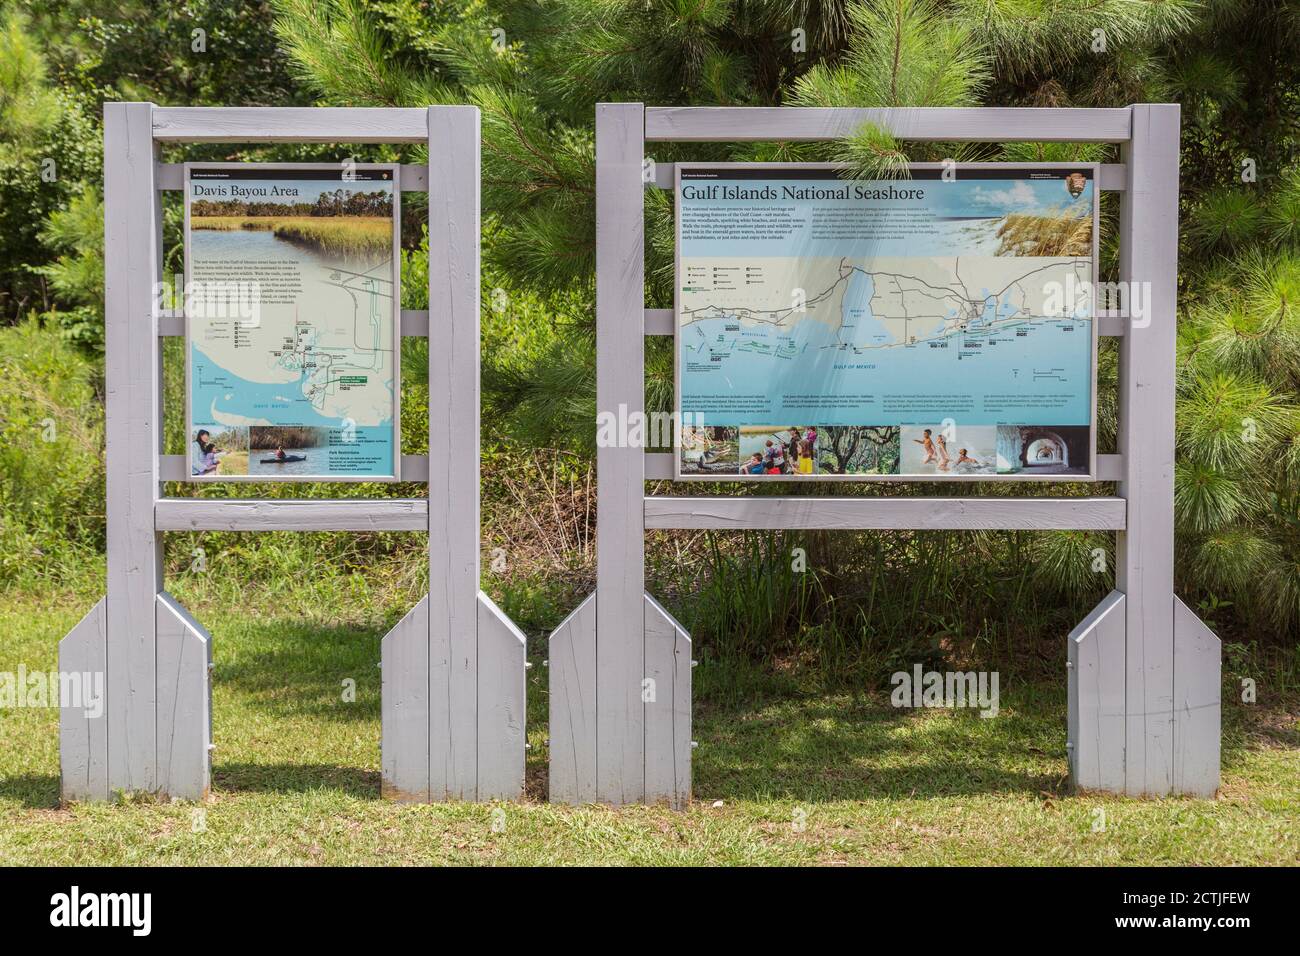 La mappa e l'elenco dei centri visitatori della zona di Davis Bayou del Gulf Islands National Seashore a Ocean Springs, Mississippi Foto Stock